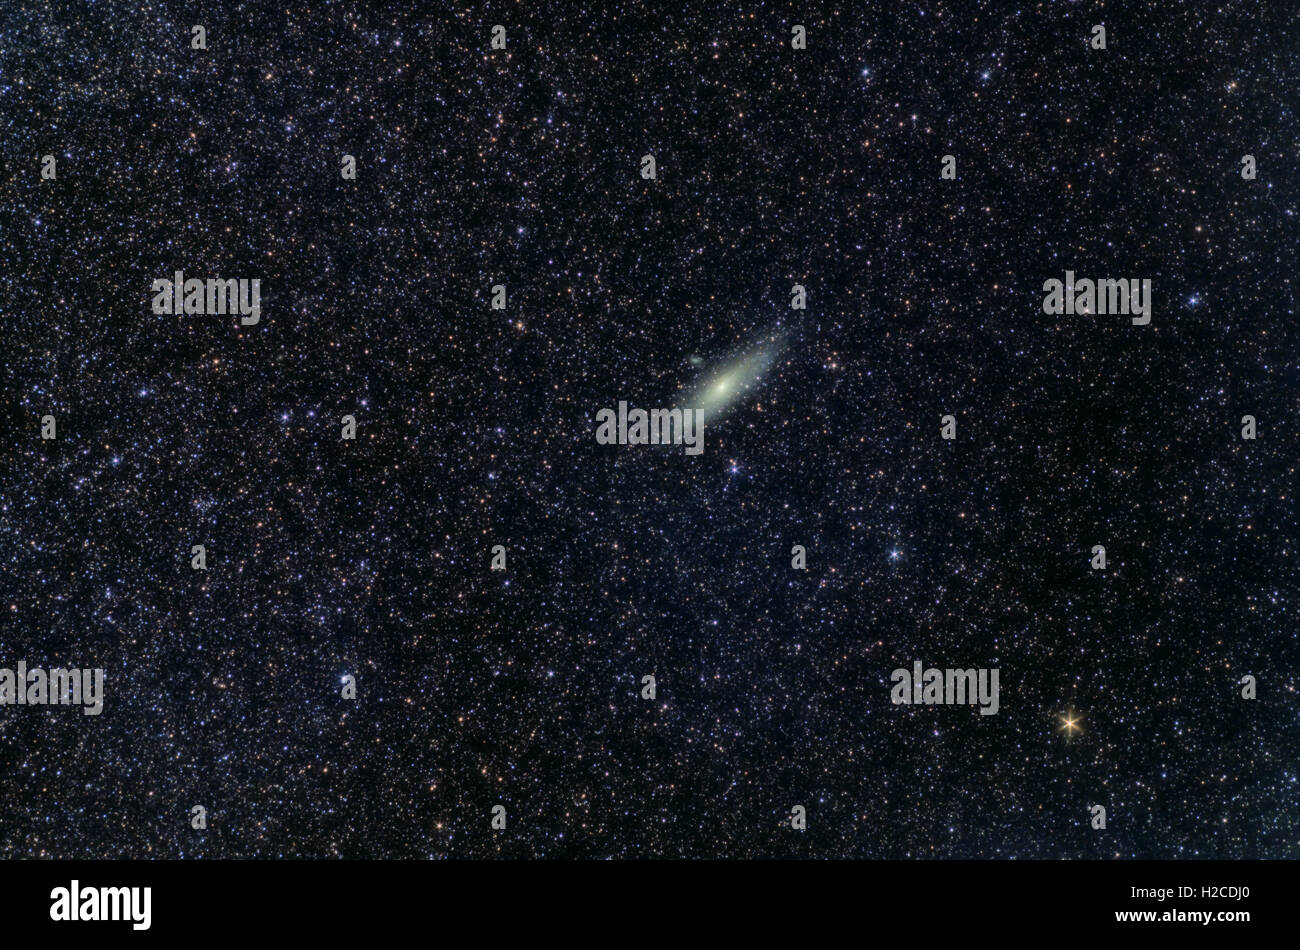 Astronomia Space Universe foto: la galassia di Andromeda (M31 o NGC224) con stelle come primo piano. L'esposizione totale 18 minuti. Foto Stock